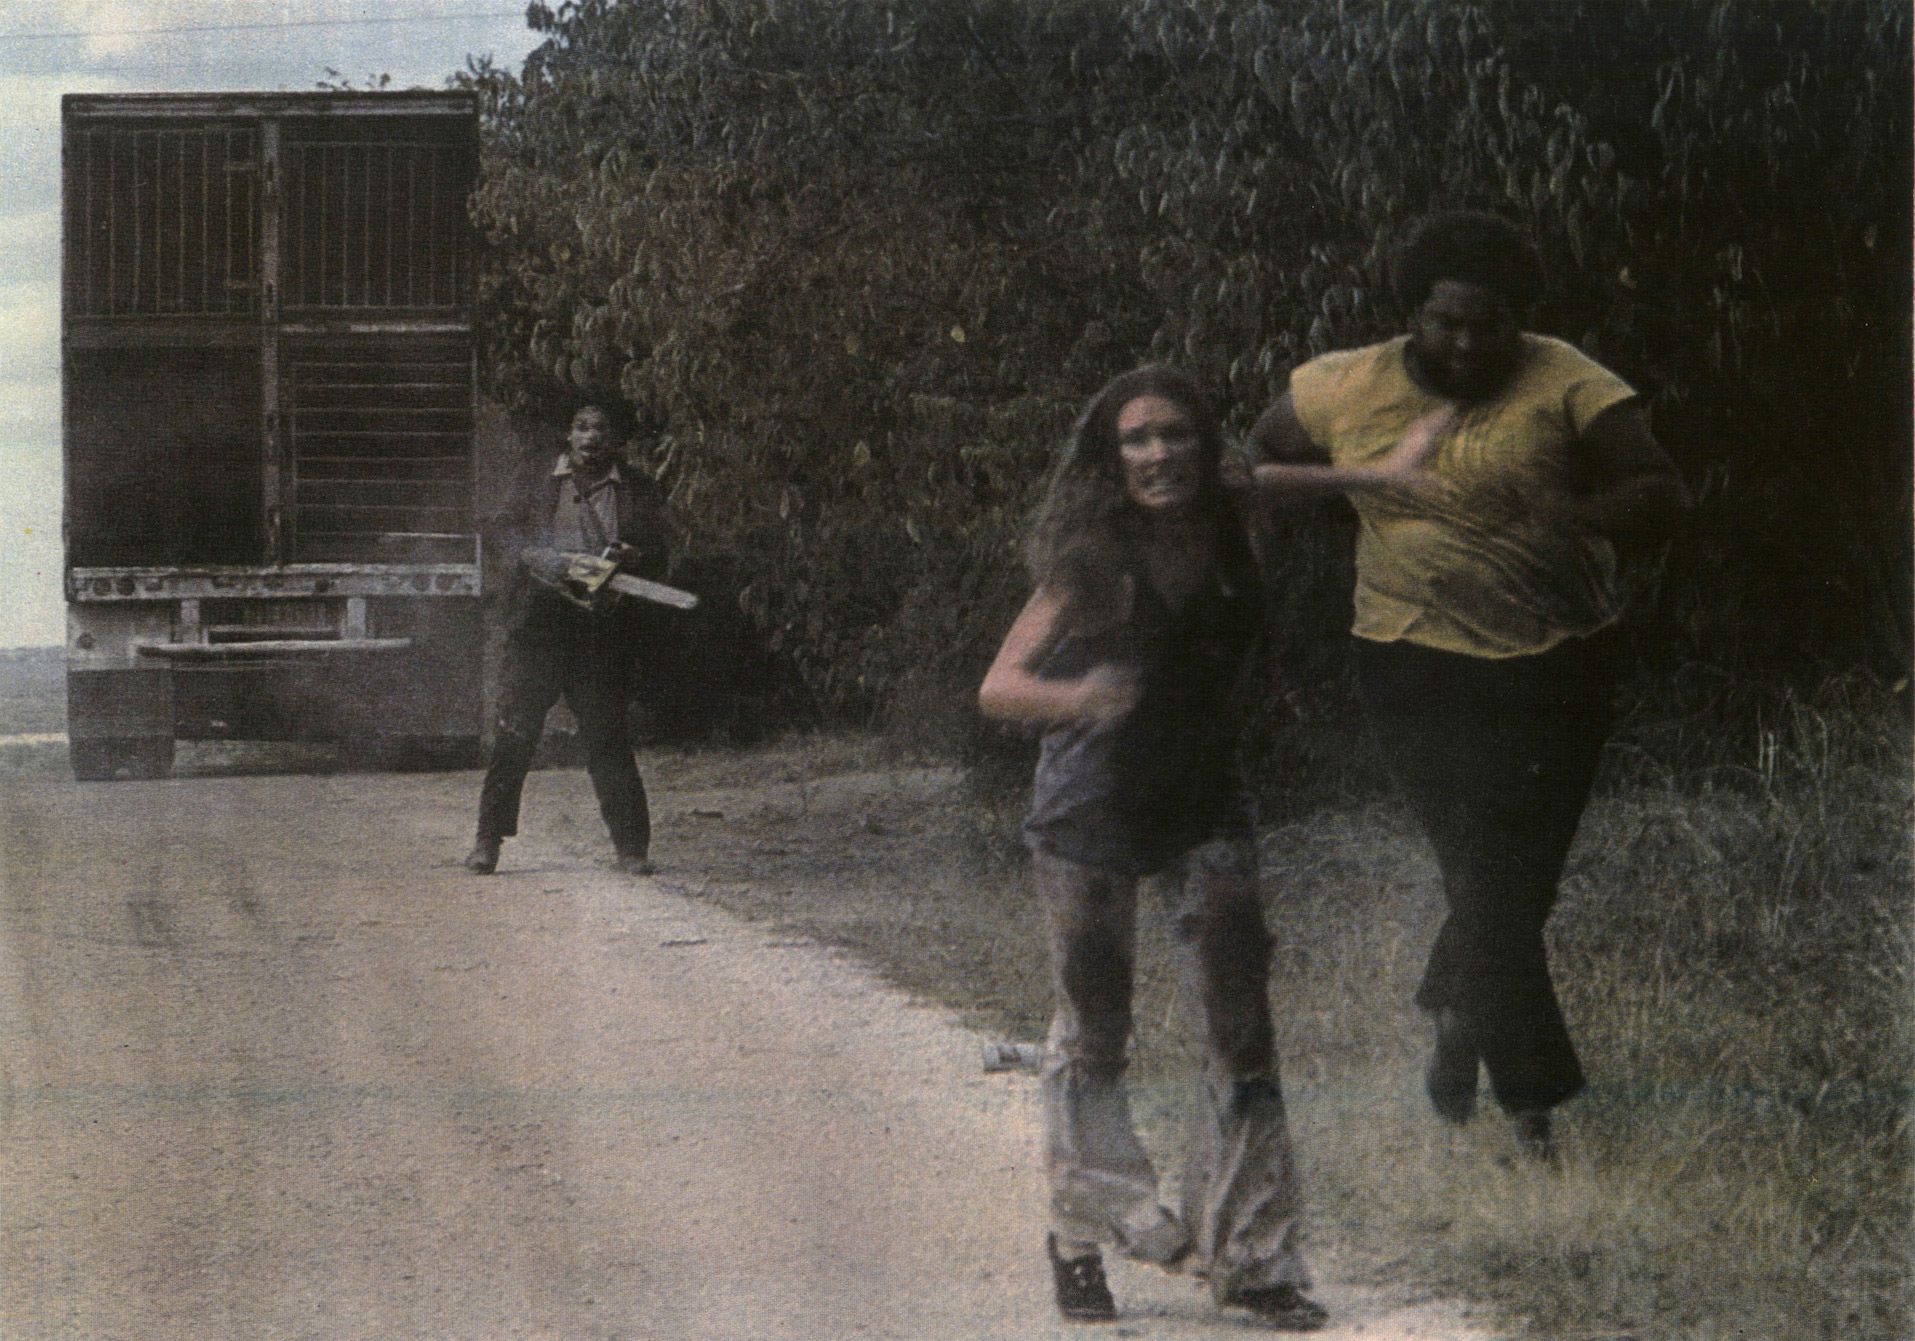 The Texas Chain Saw Massacre ganha data oficial de lançamento